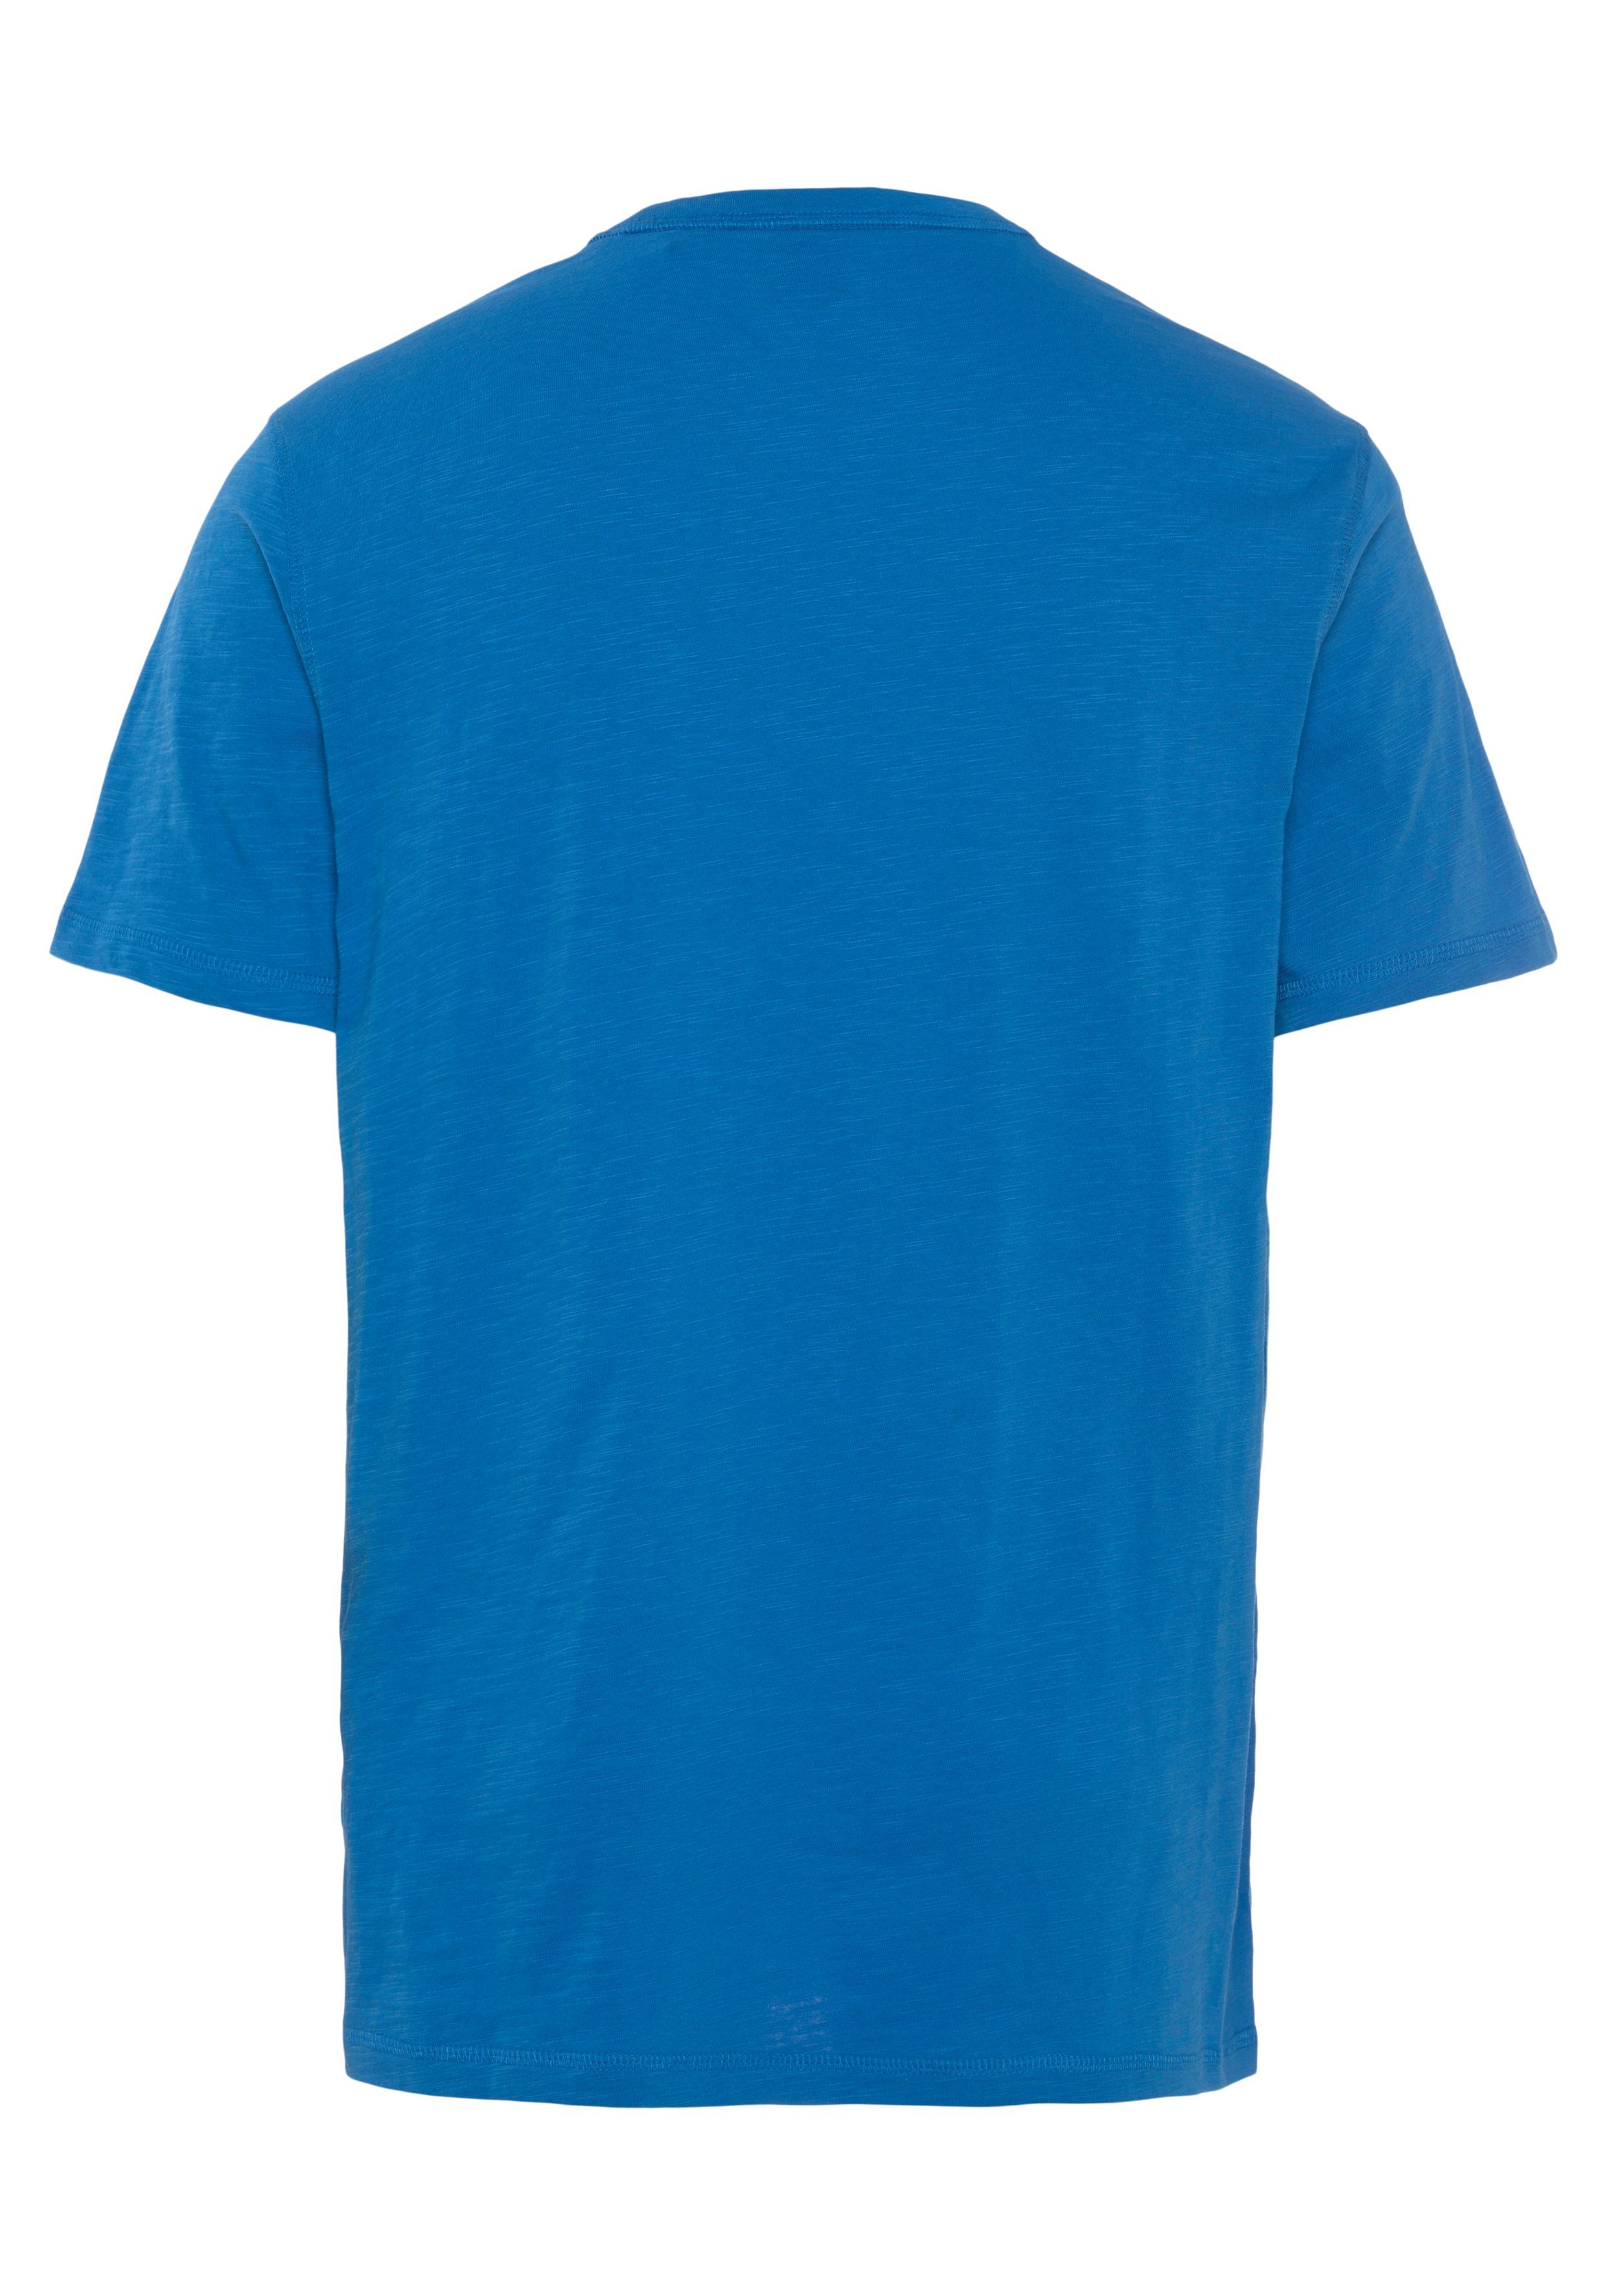 open_blue2 verziert ORANGE (Packung) mit Tegood Overlock-Nähten BOSS T-Shirt